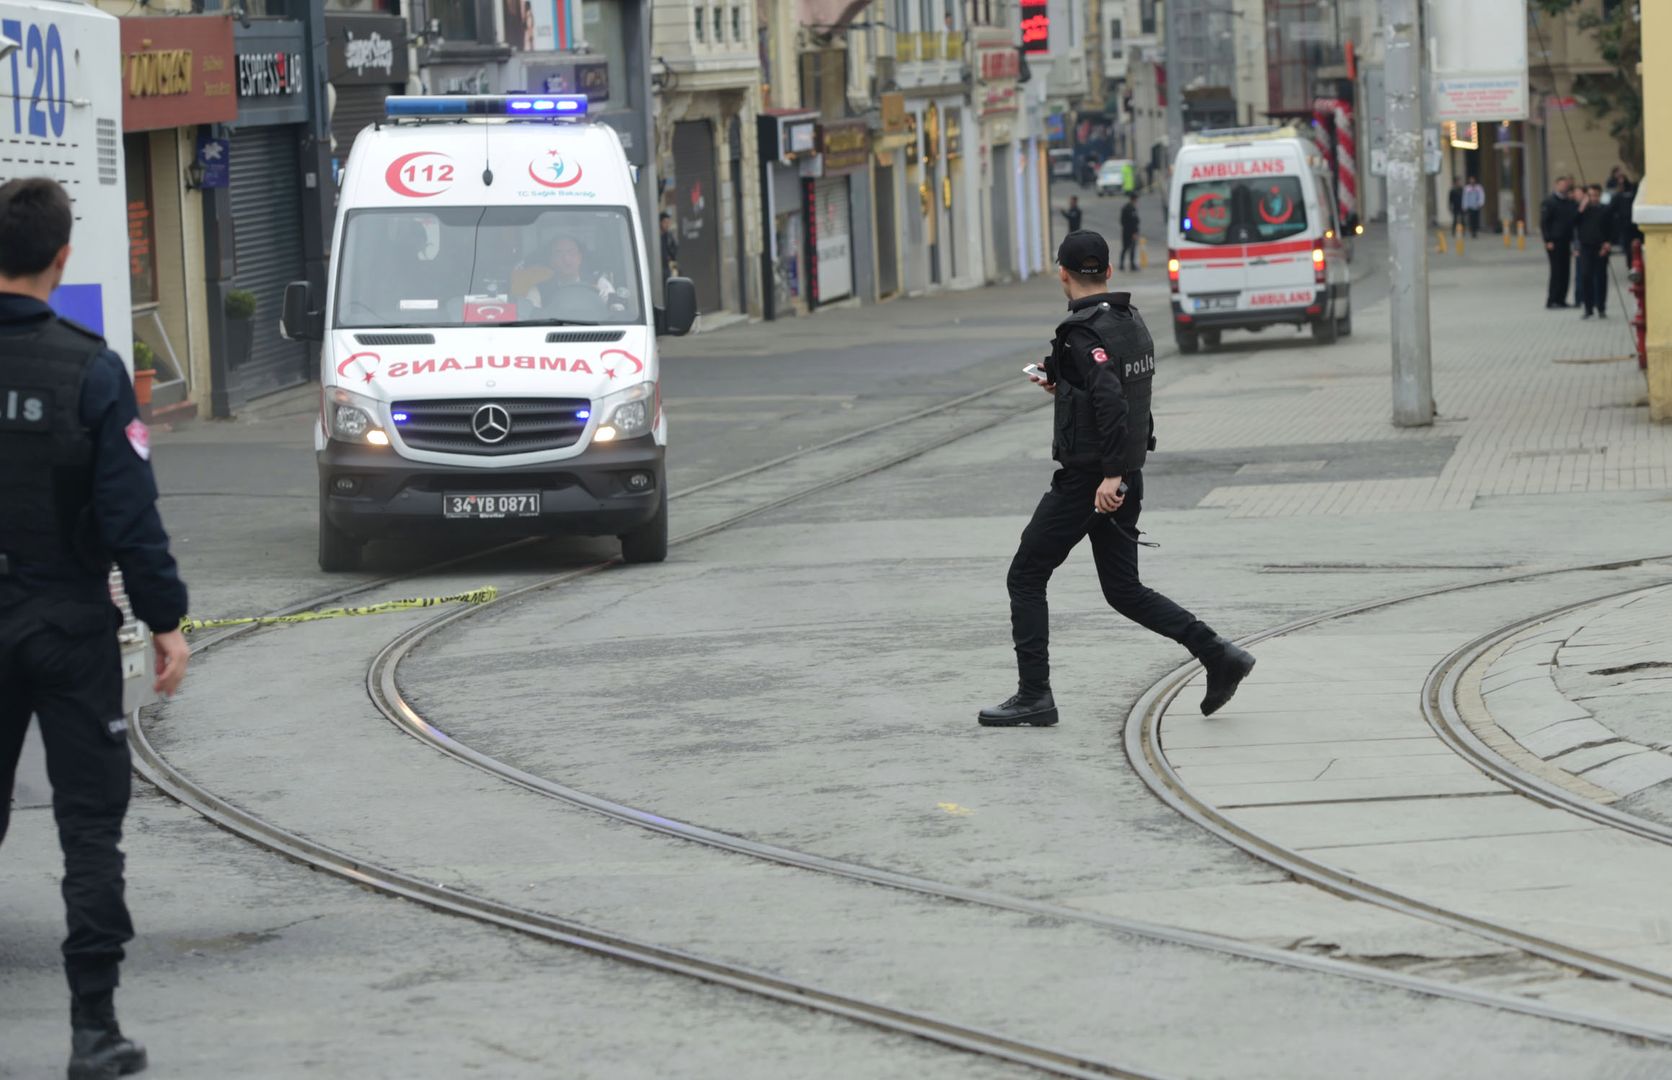 Samobójczy atak w Stambule. Nie żyją 4 osoby